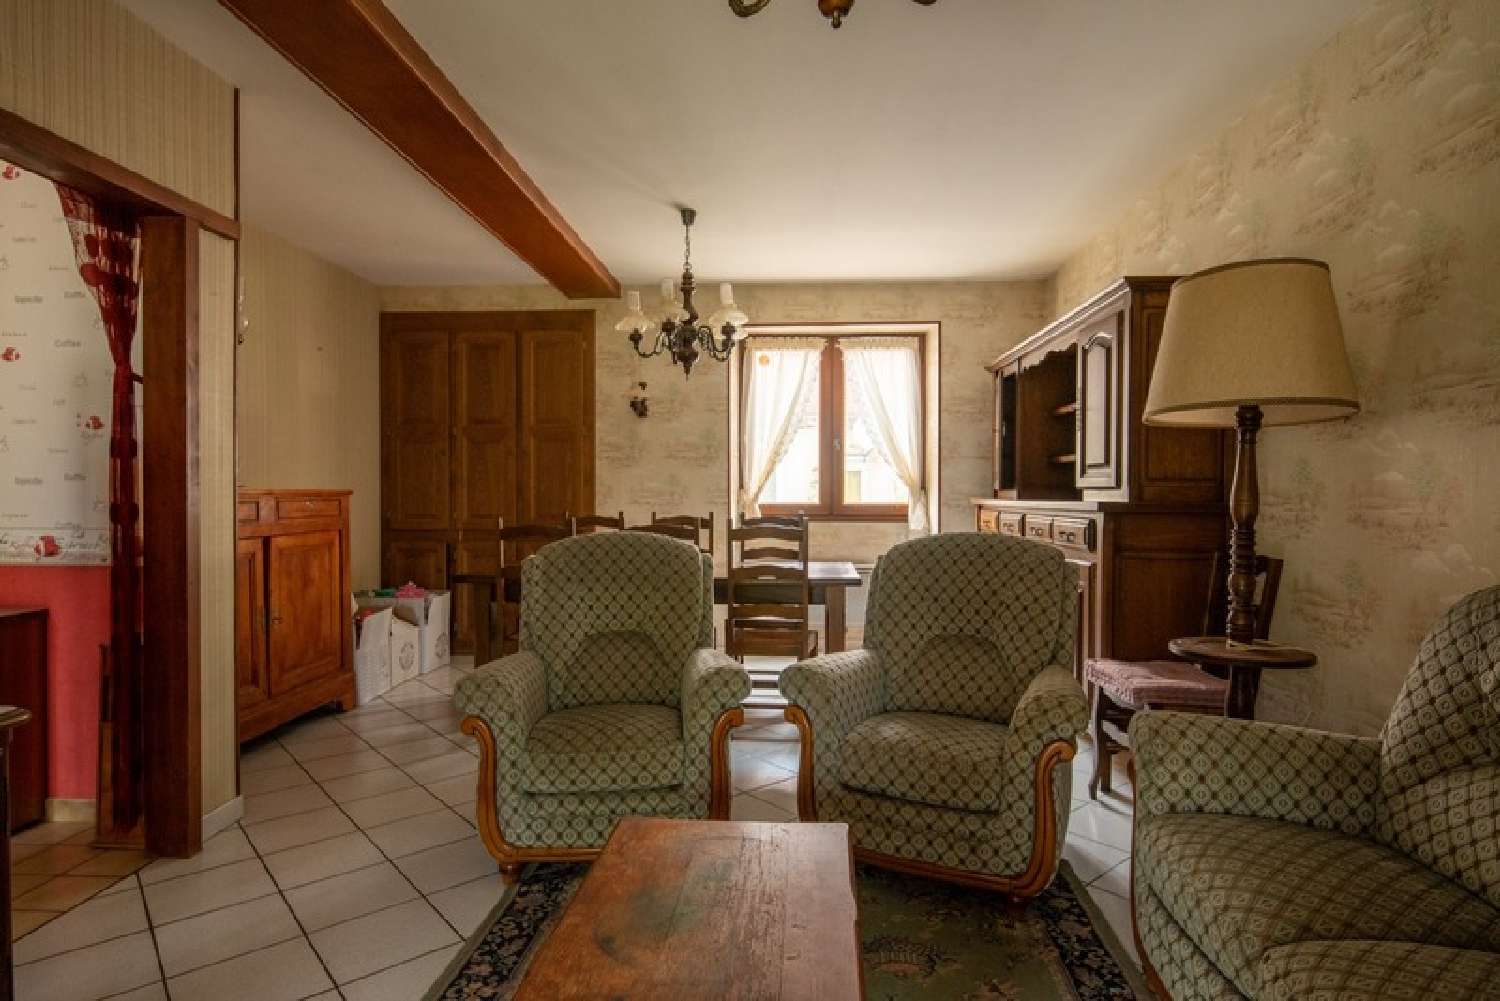  à vendre maison Lanouaille Dordogne 2